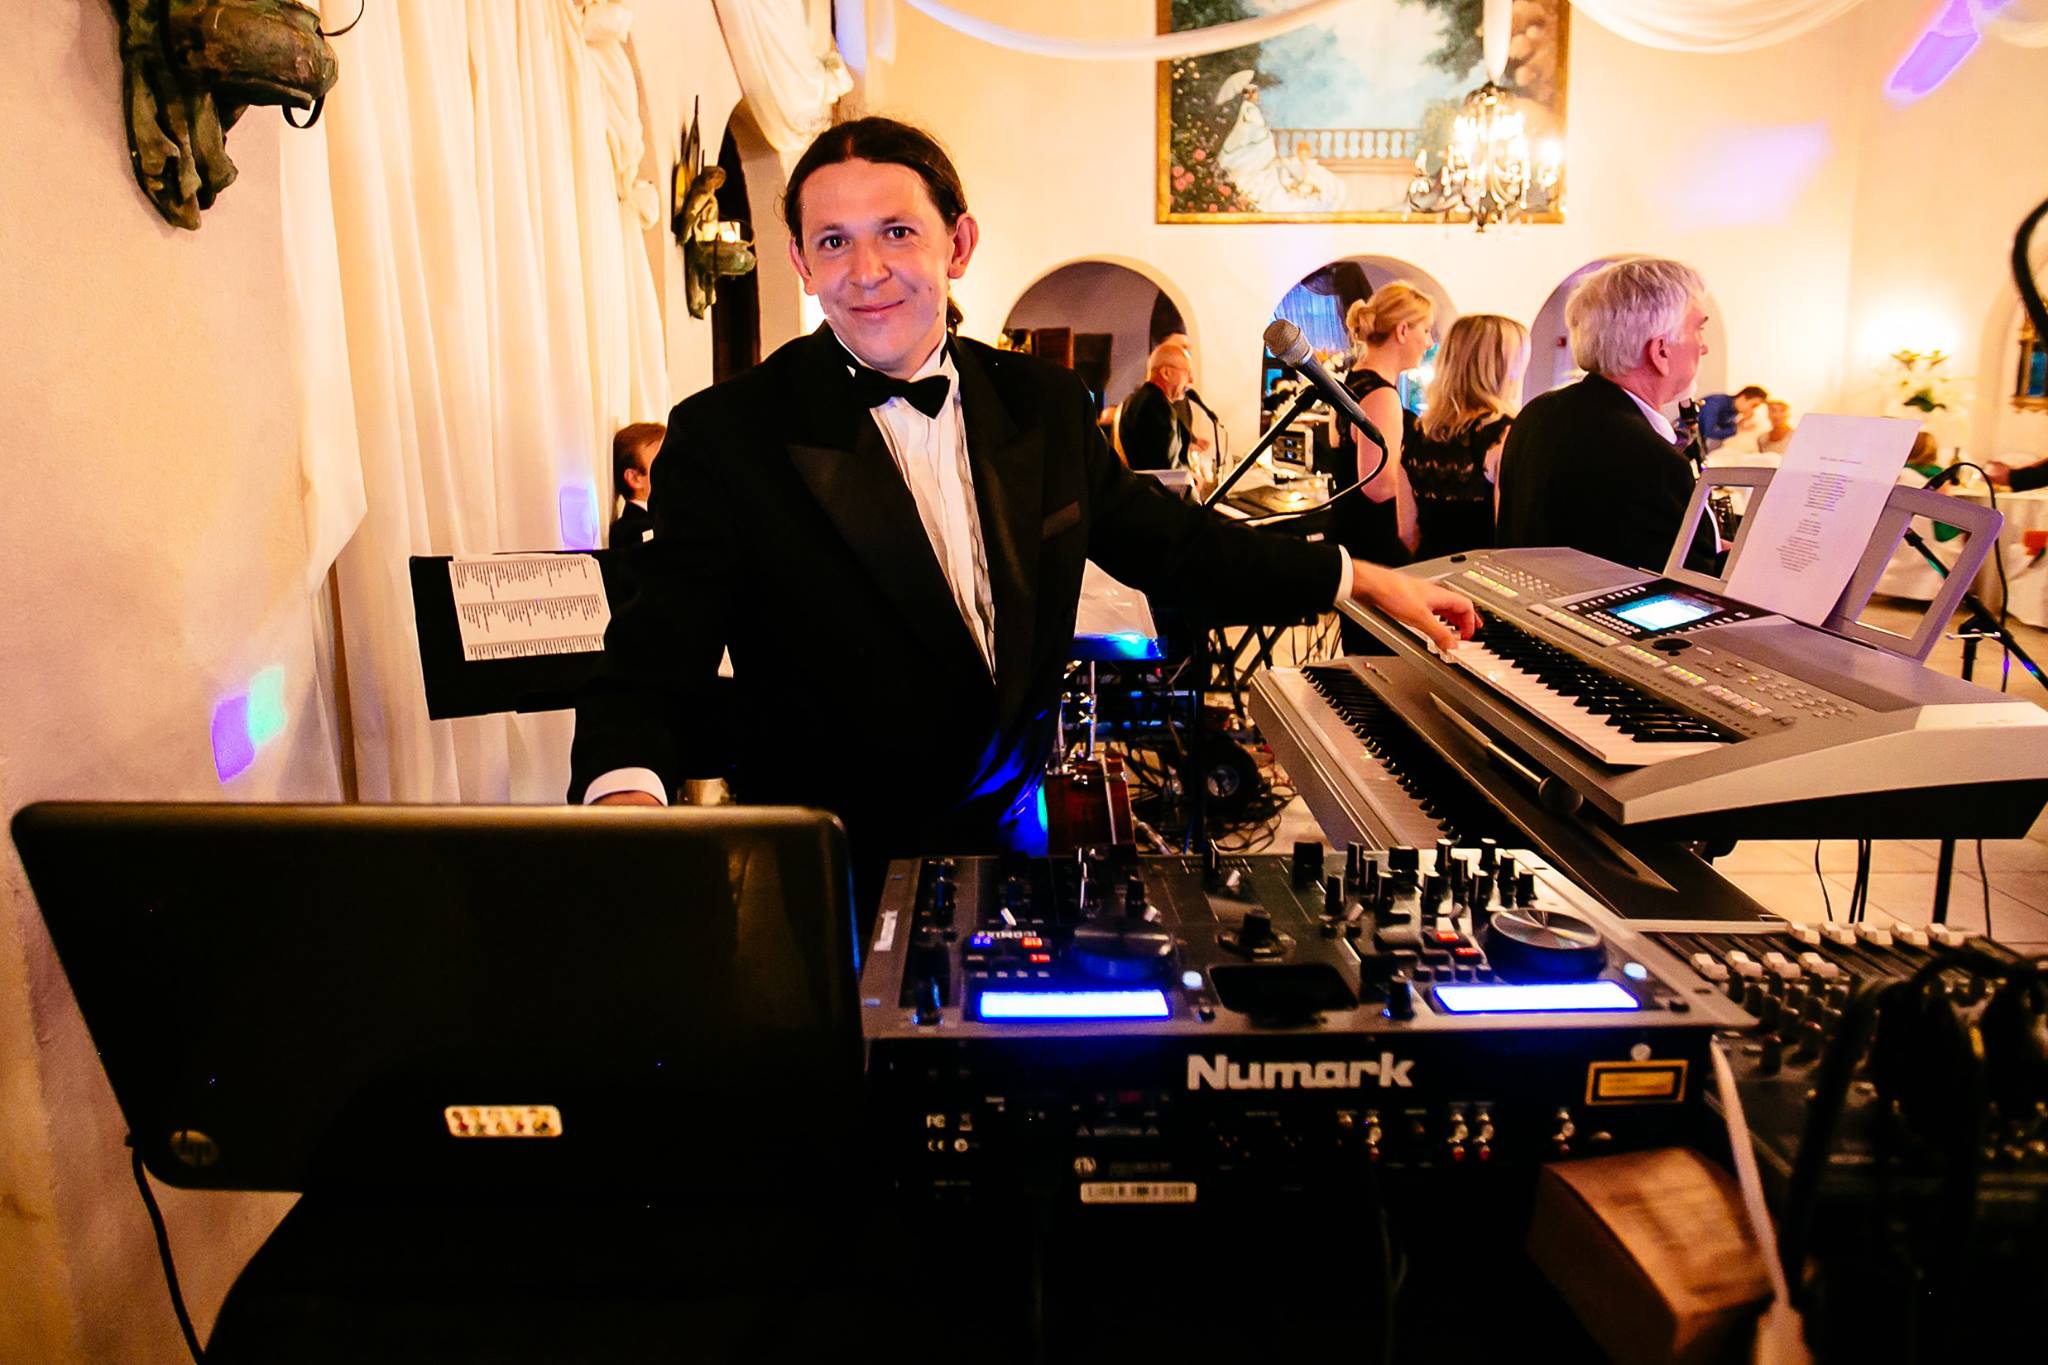 Polski DJ na imprezy w NY, NJ, PA i CT. DJ Halat